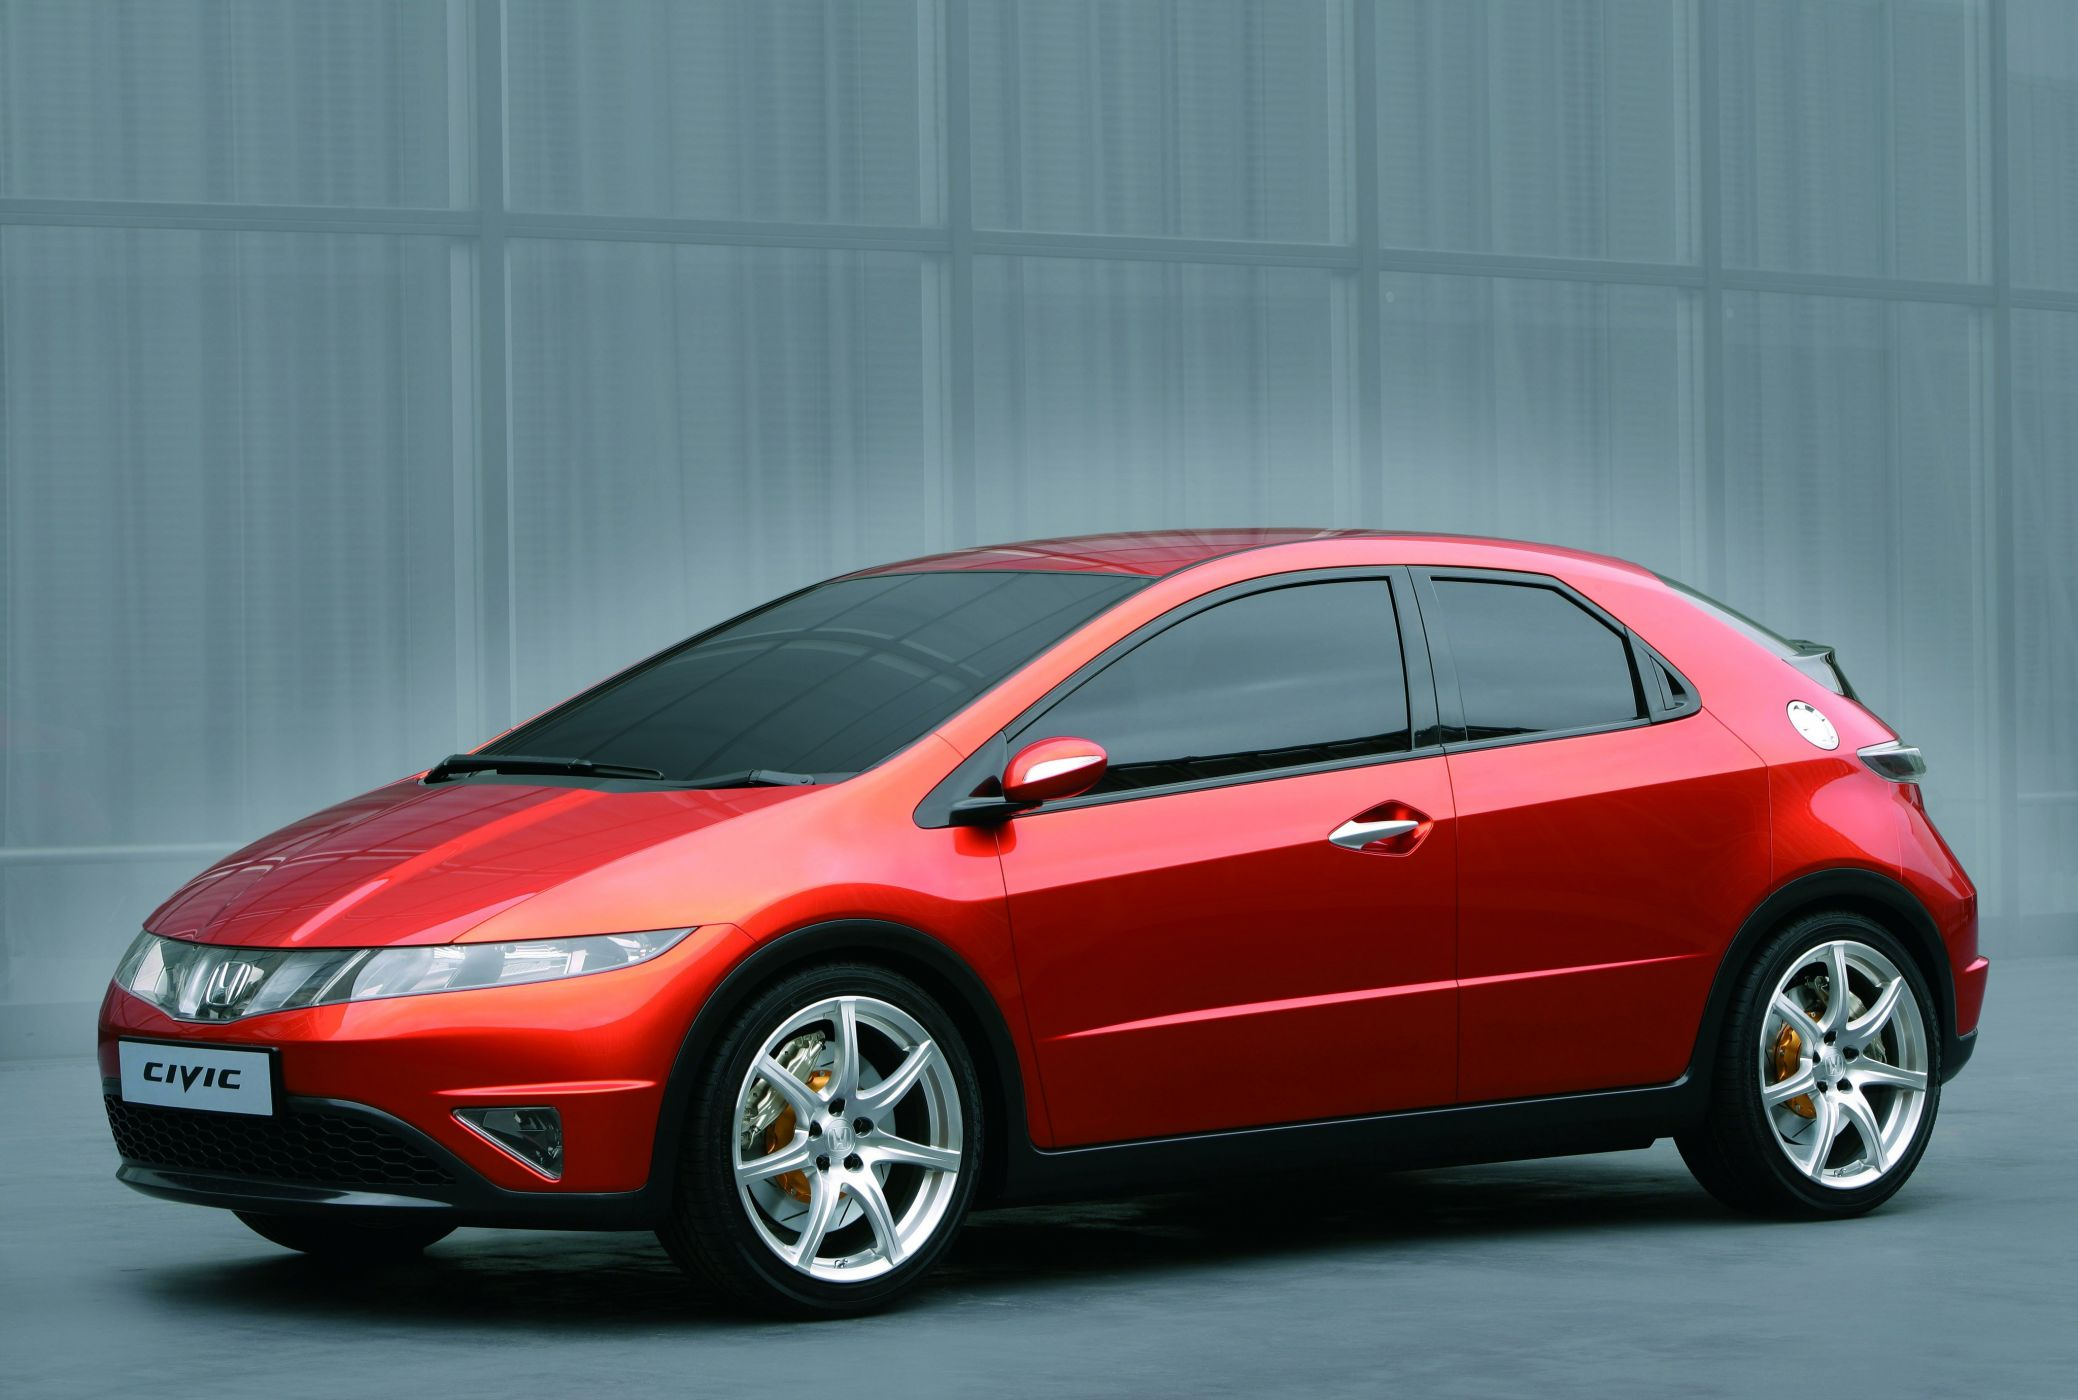 Хонда 5д хэтчбек. Хонда Цивик 5д хэтчбек. Honda Civic 8 5d (2005-2011). Honda Civic 5d оранжевый. Хонда Цивик хэтчбек 5 дверей.